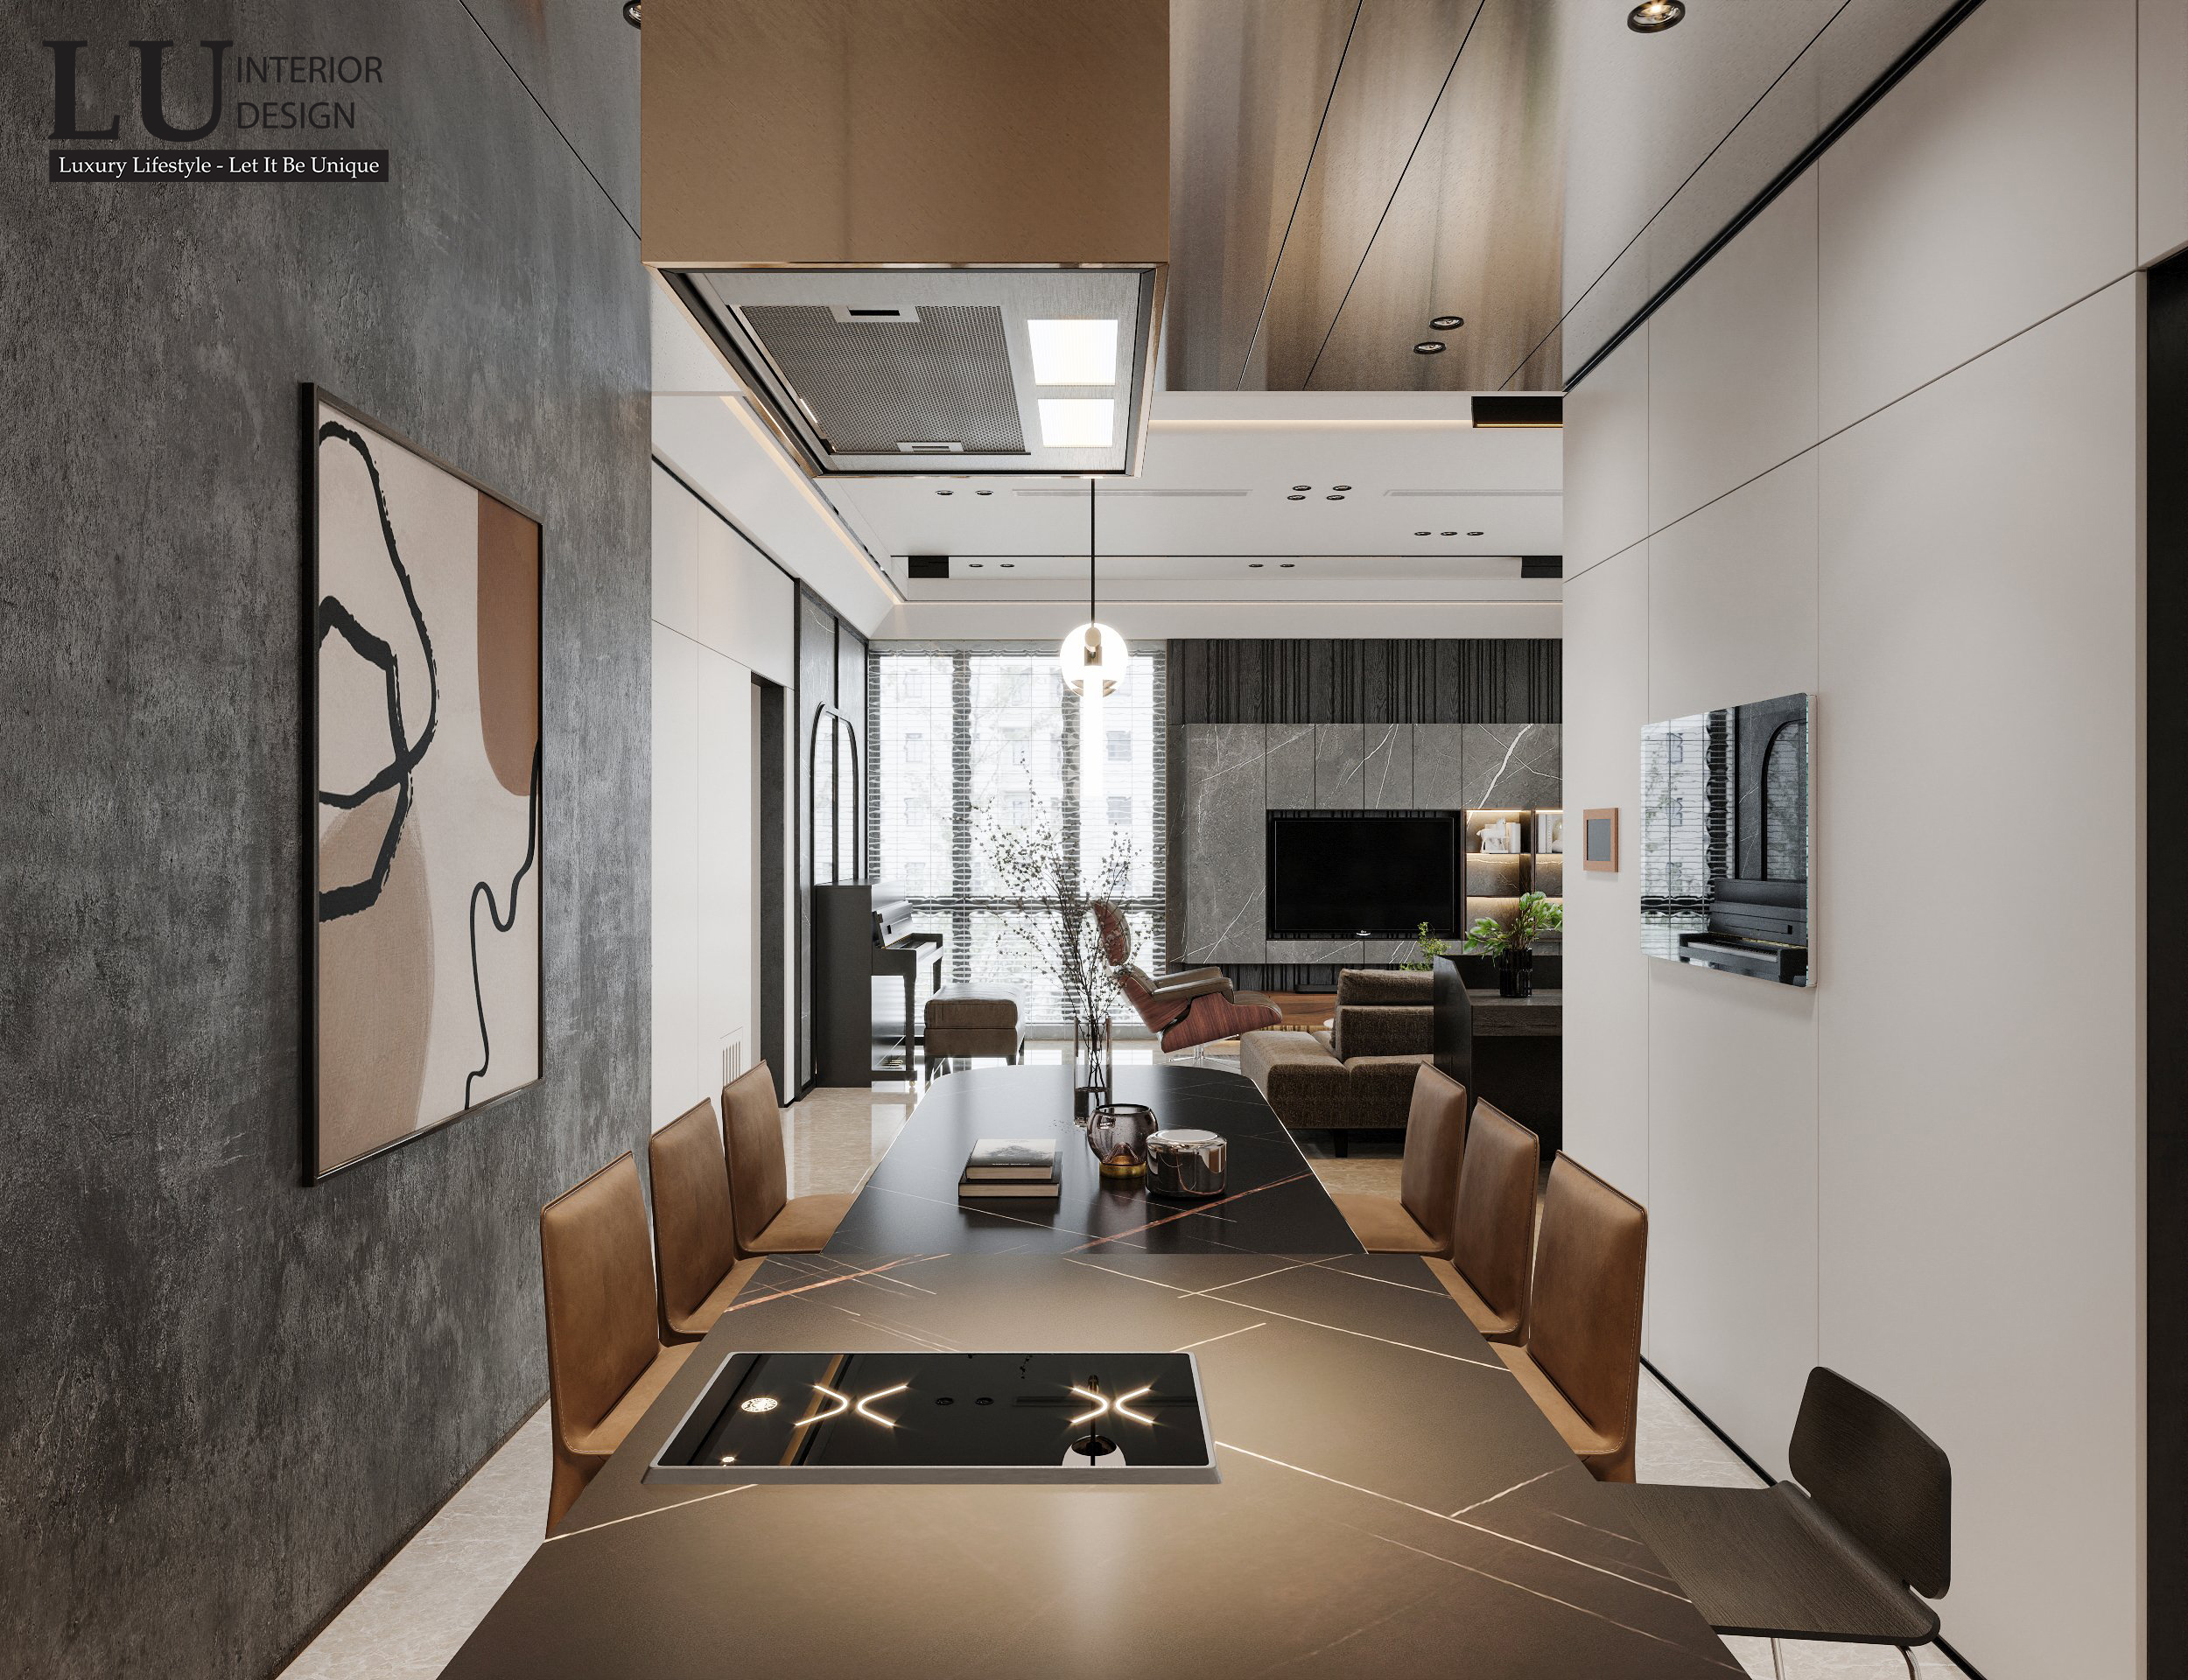 Bỏ đi vách ngăn không cần thiết, phòng khách và khu vực bếp - ăn dễ dàng tạo được sự kết nối và đồng nhất về phong cách | Căn hộ The Marq - LU Design